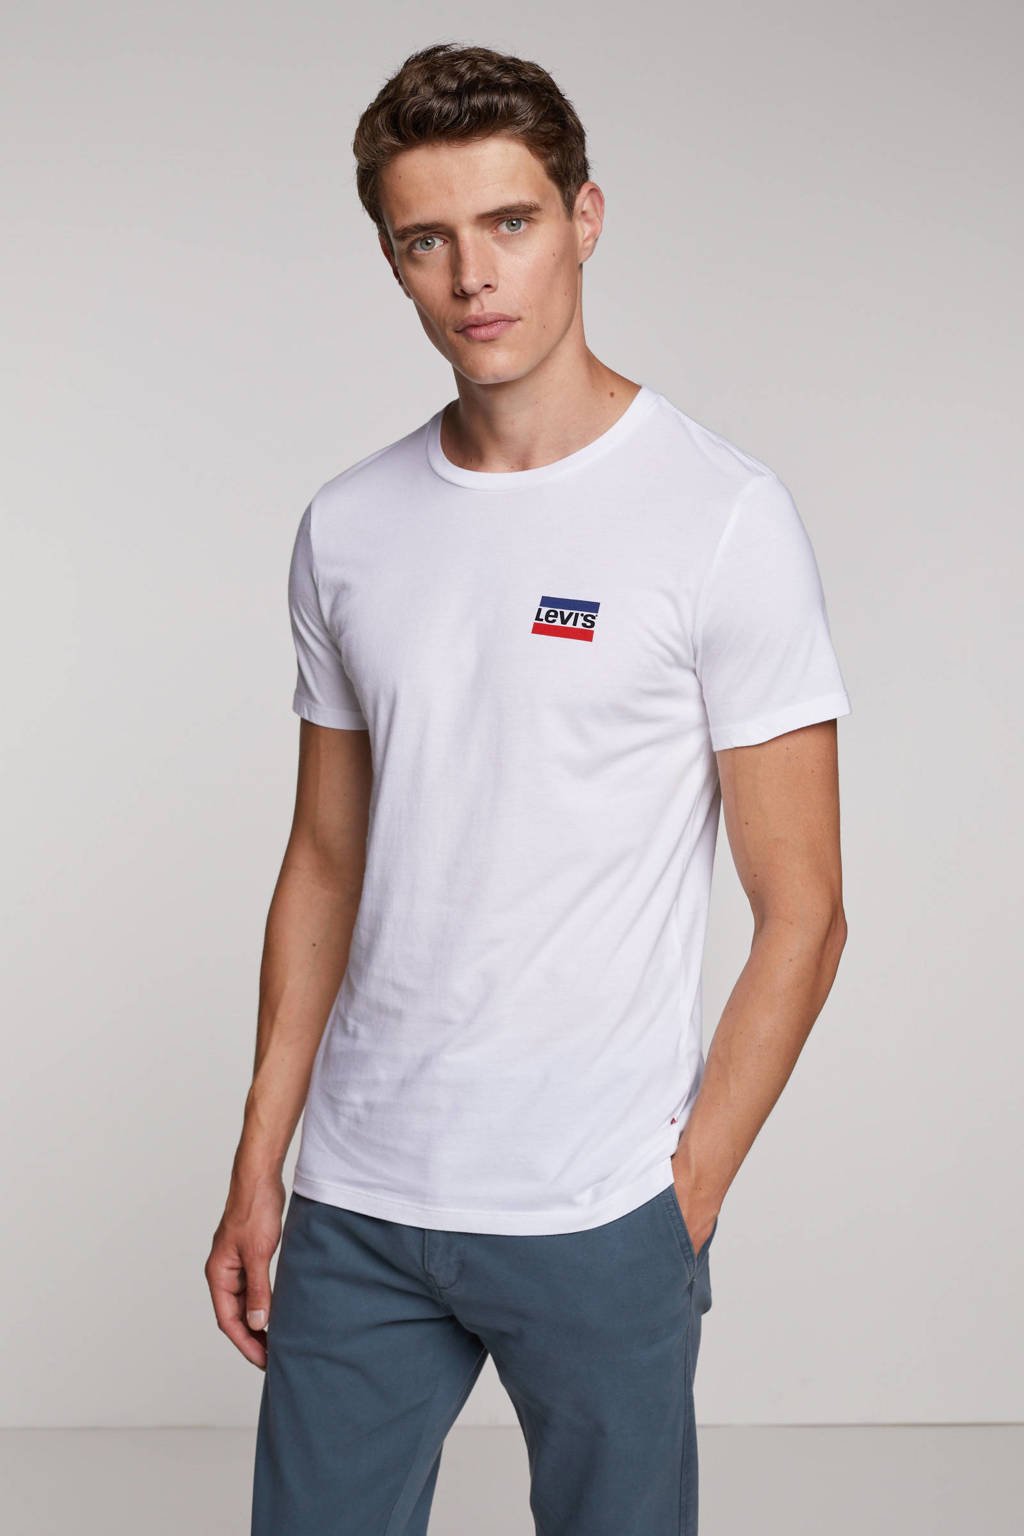 vandaag Vervoer Roei uit Levi's T-shirt (set van 2) wit/grijs | wehkamp